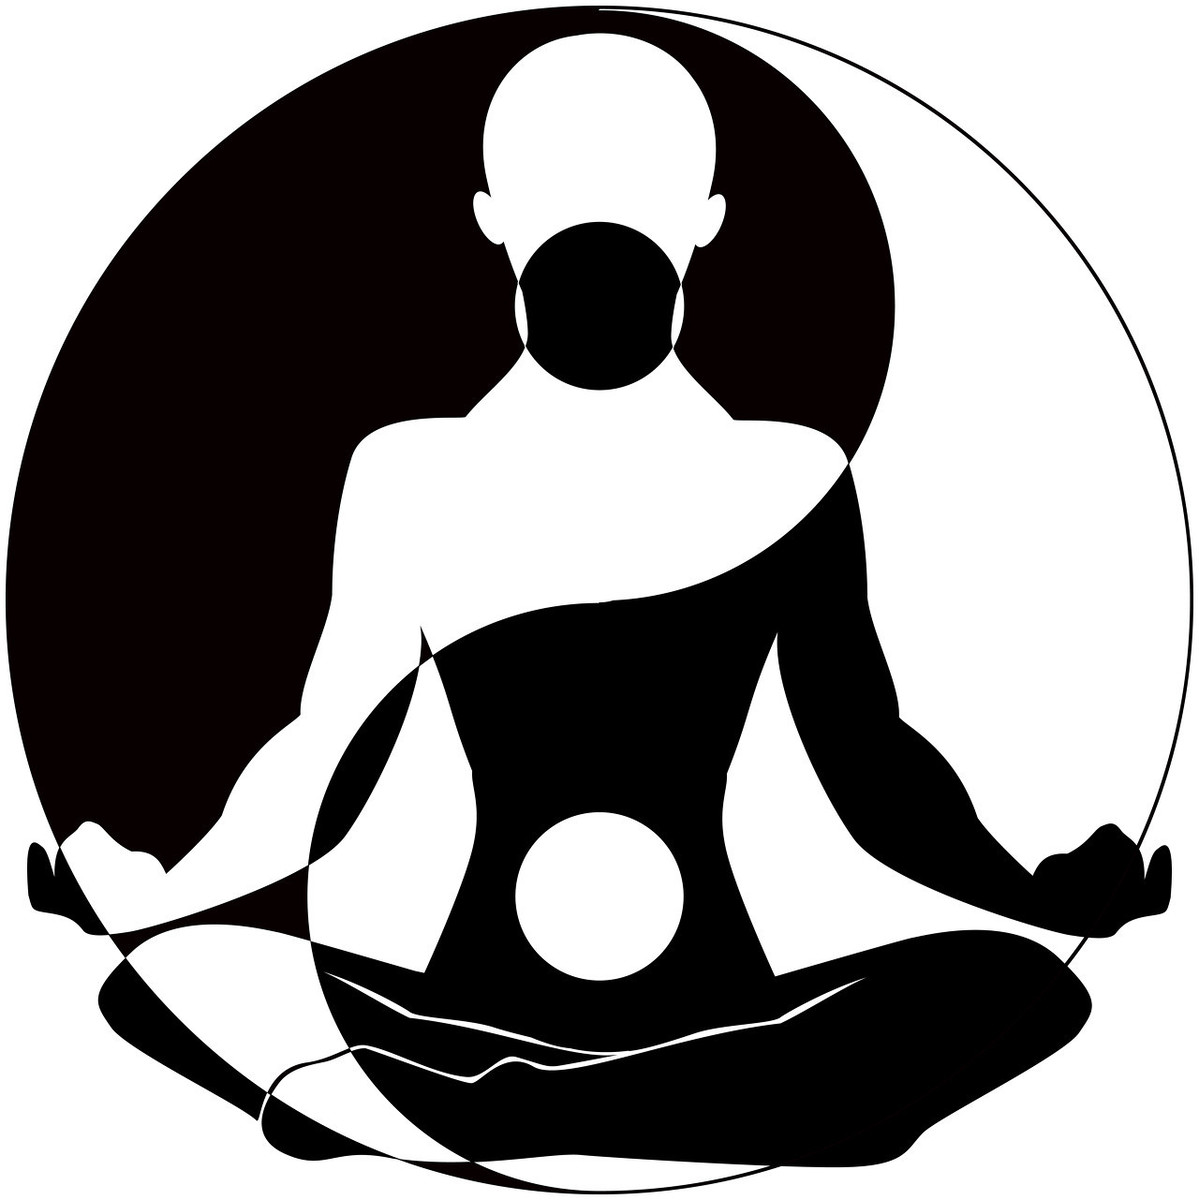 有气虚症的人群可采取阴瑜伽的恢复性疗法三个体式简单有效